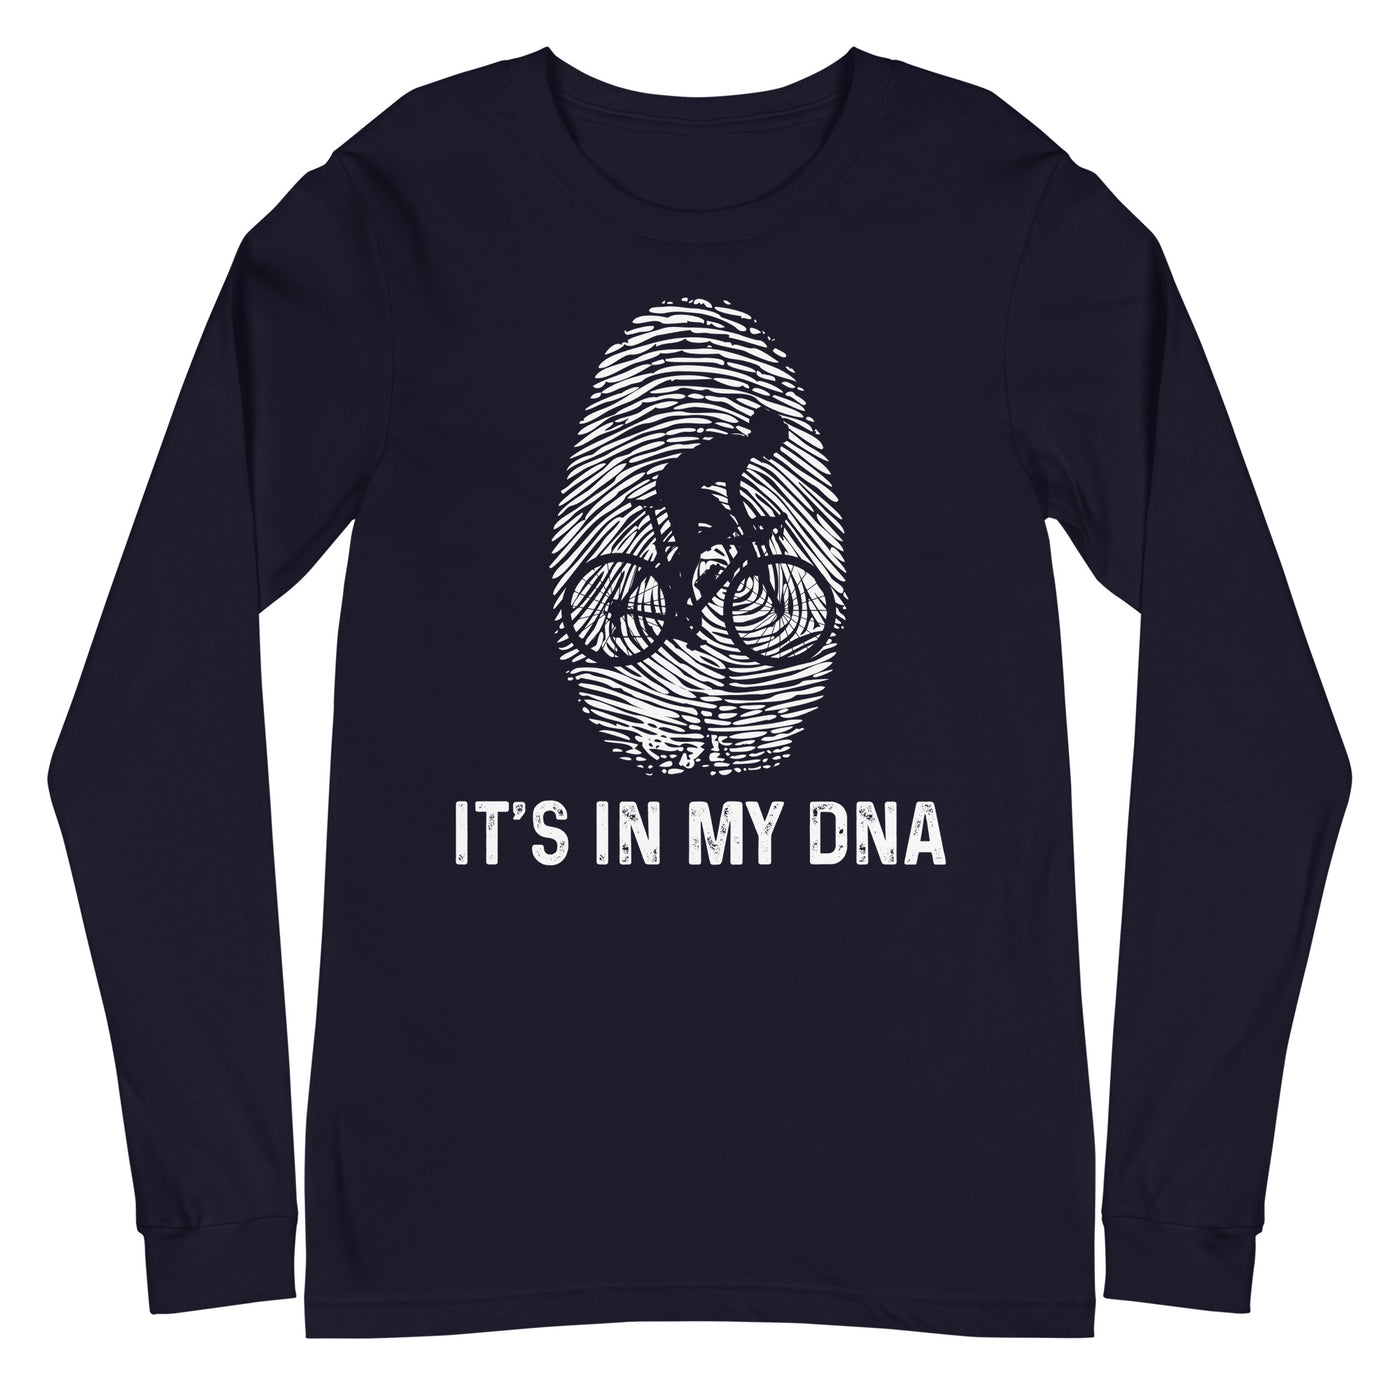 It's In My DNA 1 - Longsleeve (Unisex) fahrrad xxx yyy zzz Navy